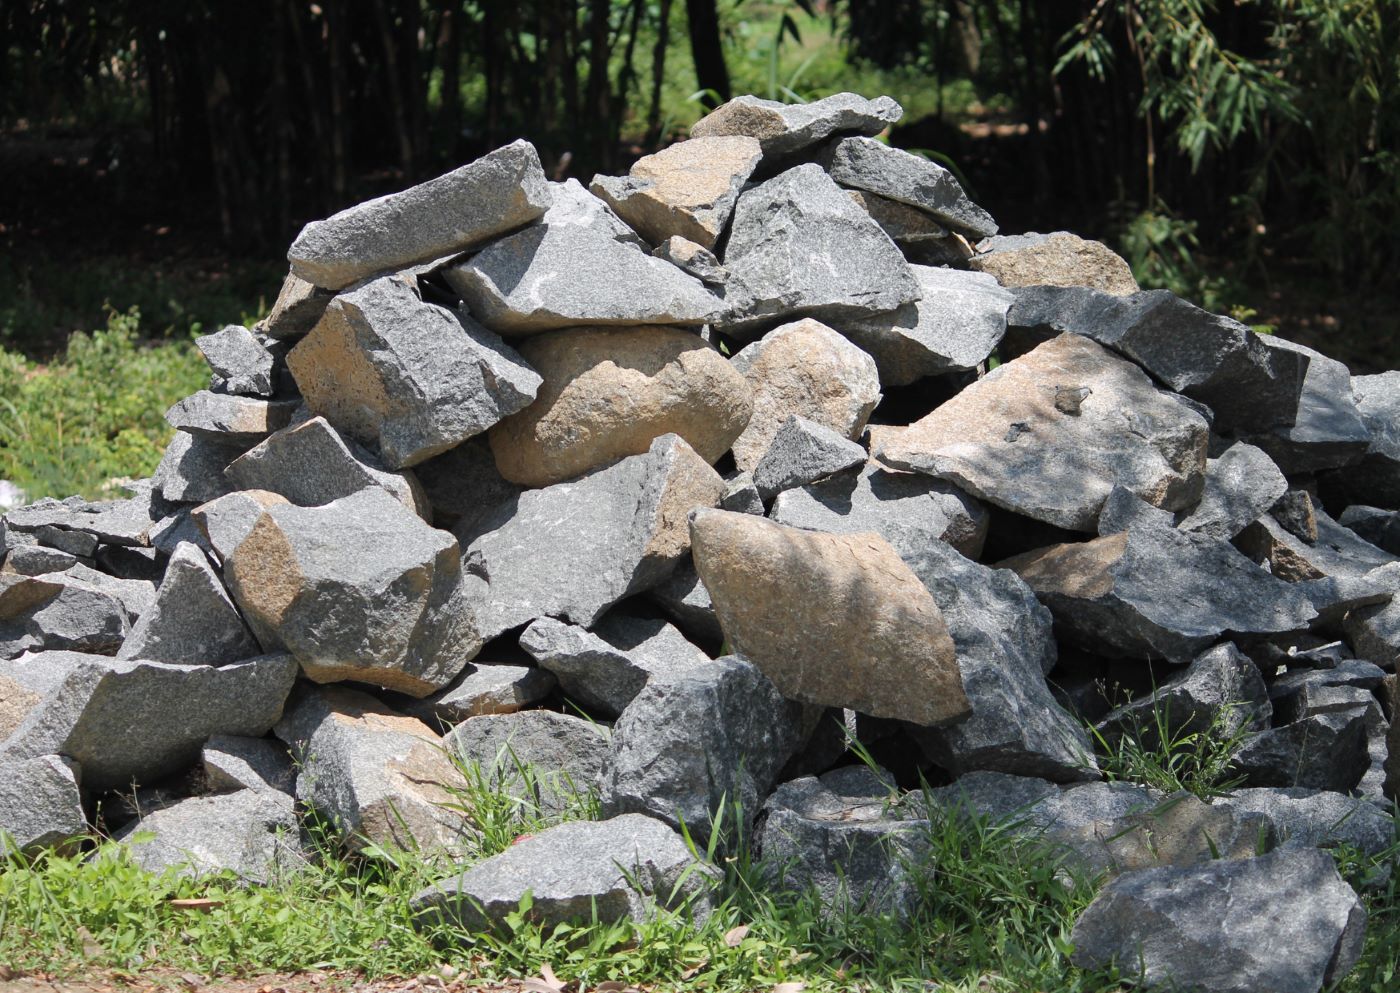 Des petites structures telles que des tas de pierres, permettent d'améliorer la qualité des surfaces consacrées à la biodiversité, en créant des abris pour la faune. (DR)